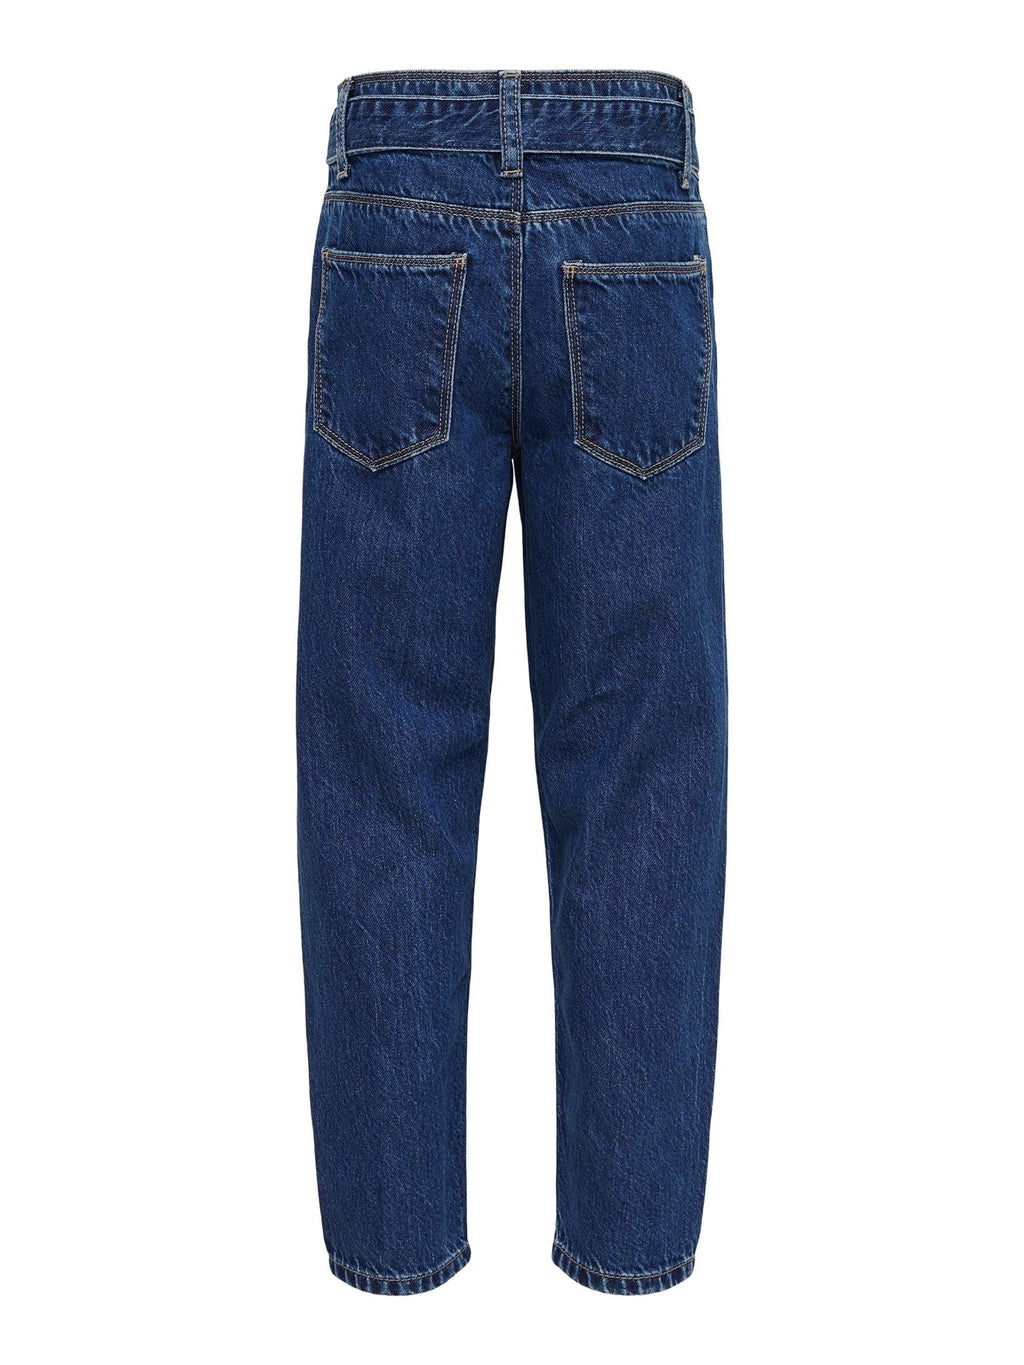 Jeans della carota Lu Reg - denim blu medio chiaro